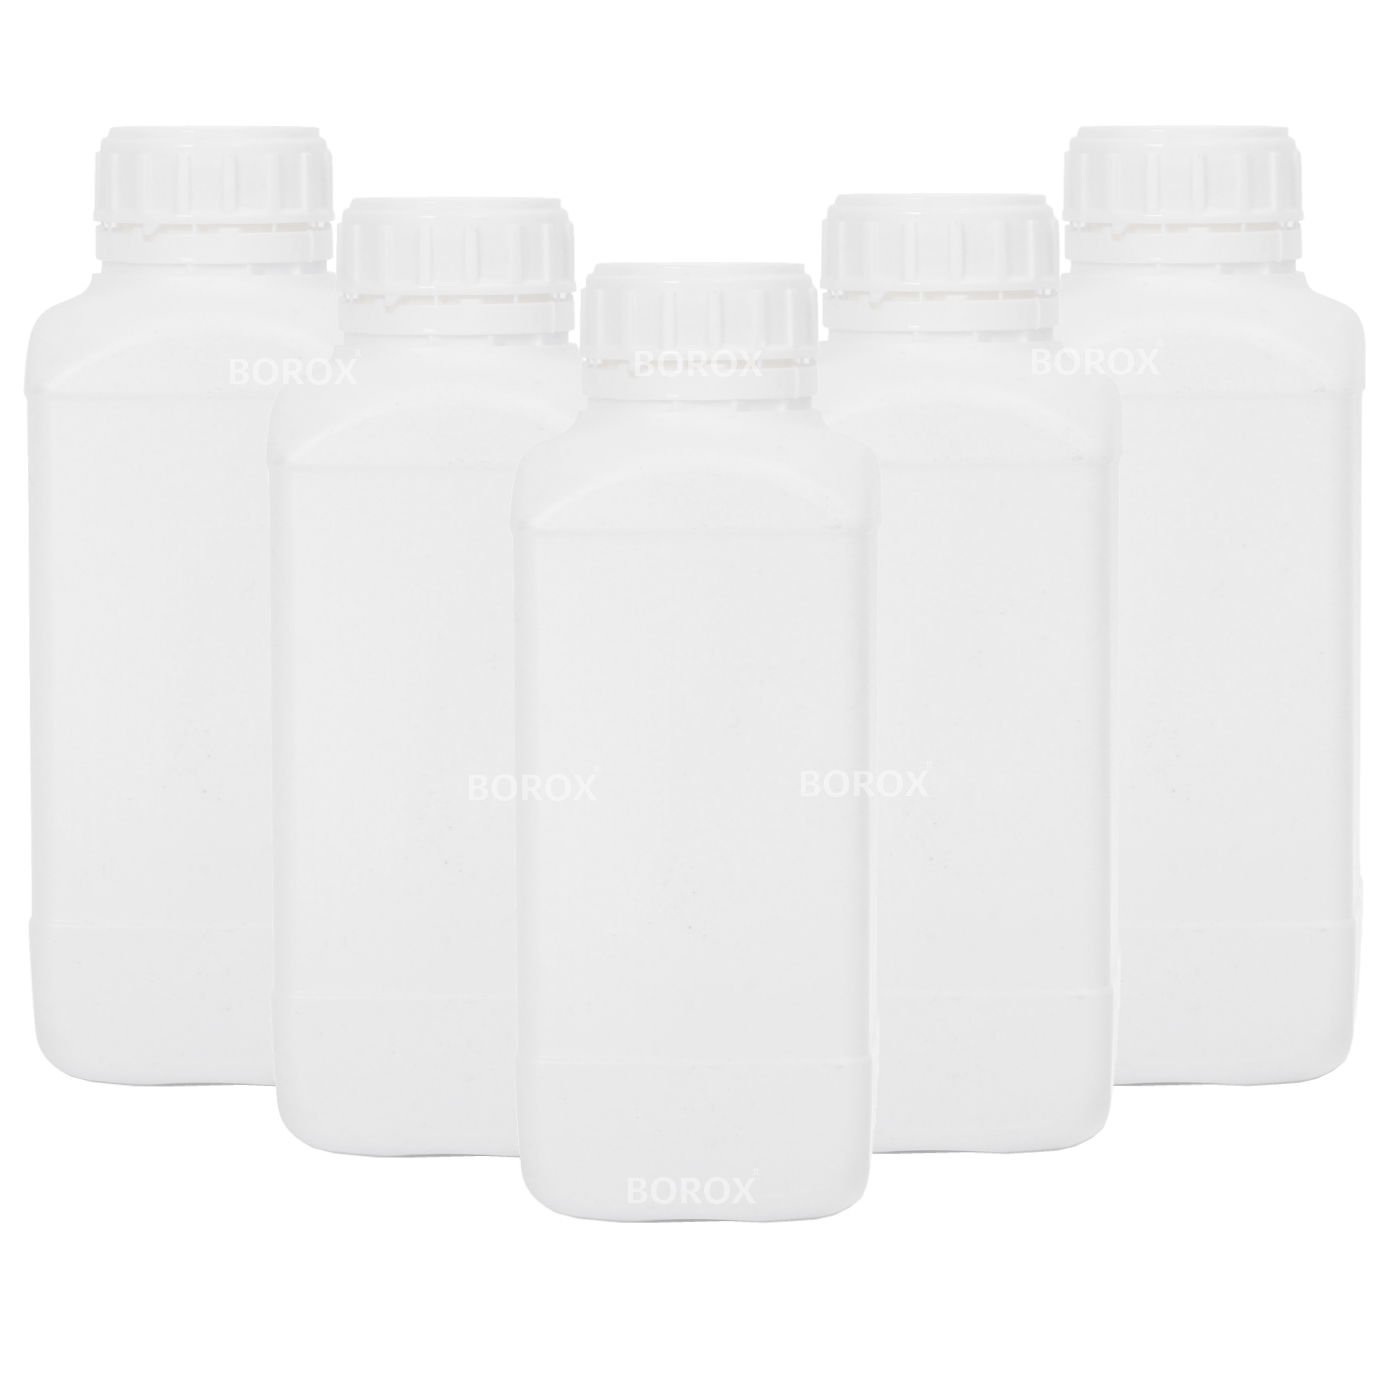 Borox Plastik Kare Şişe 1000 ml - Beyaz Kapaklı Şişe 5 Adet